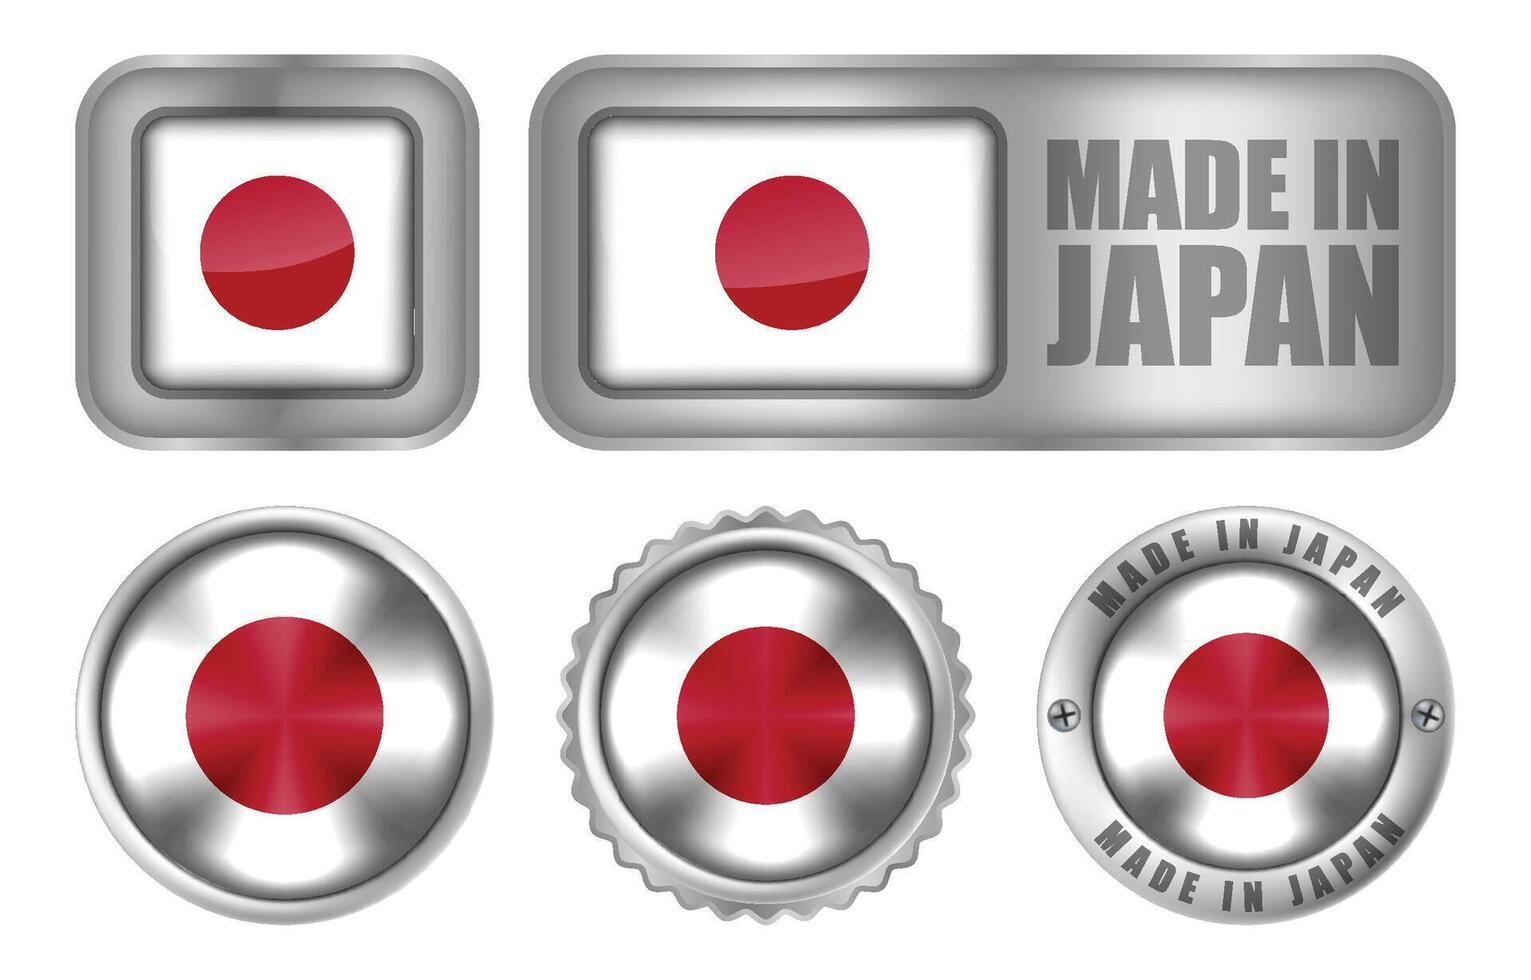 fatto nel Giappone foca distintivo o etichetta design illustrazione vettore